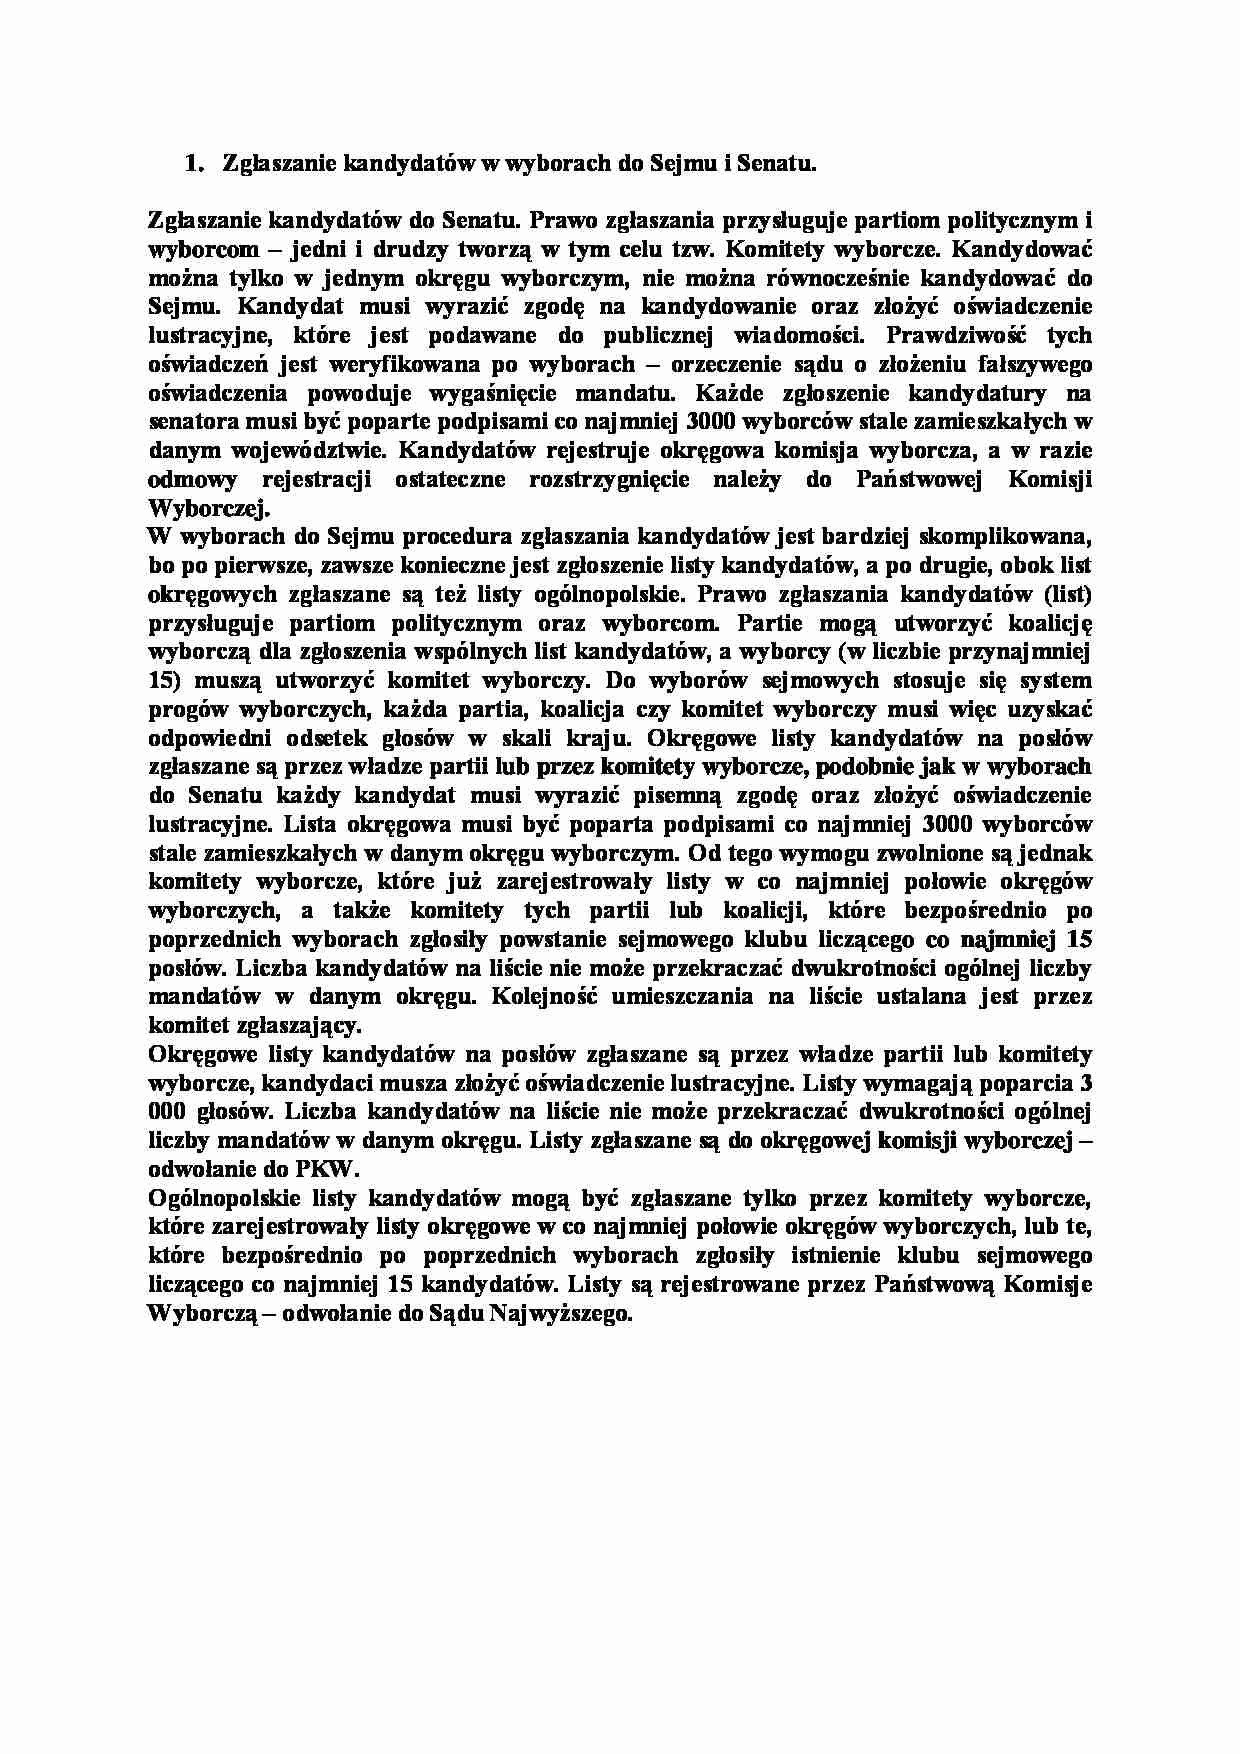 Zgłaszanie kandydatów w wyborach do Sejmu i Senatu-opracowanie - strona 1